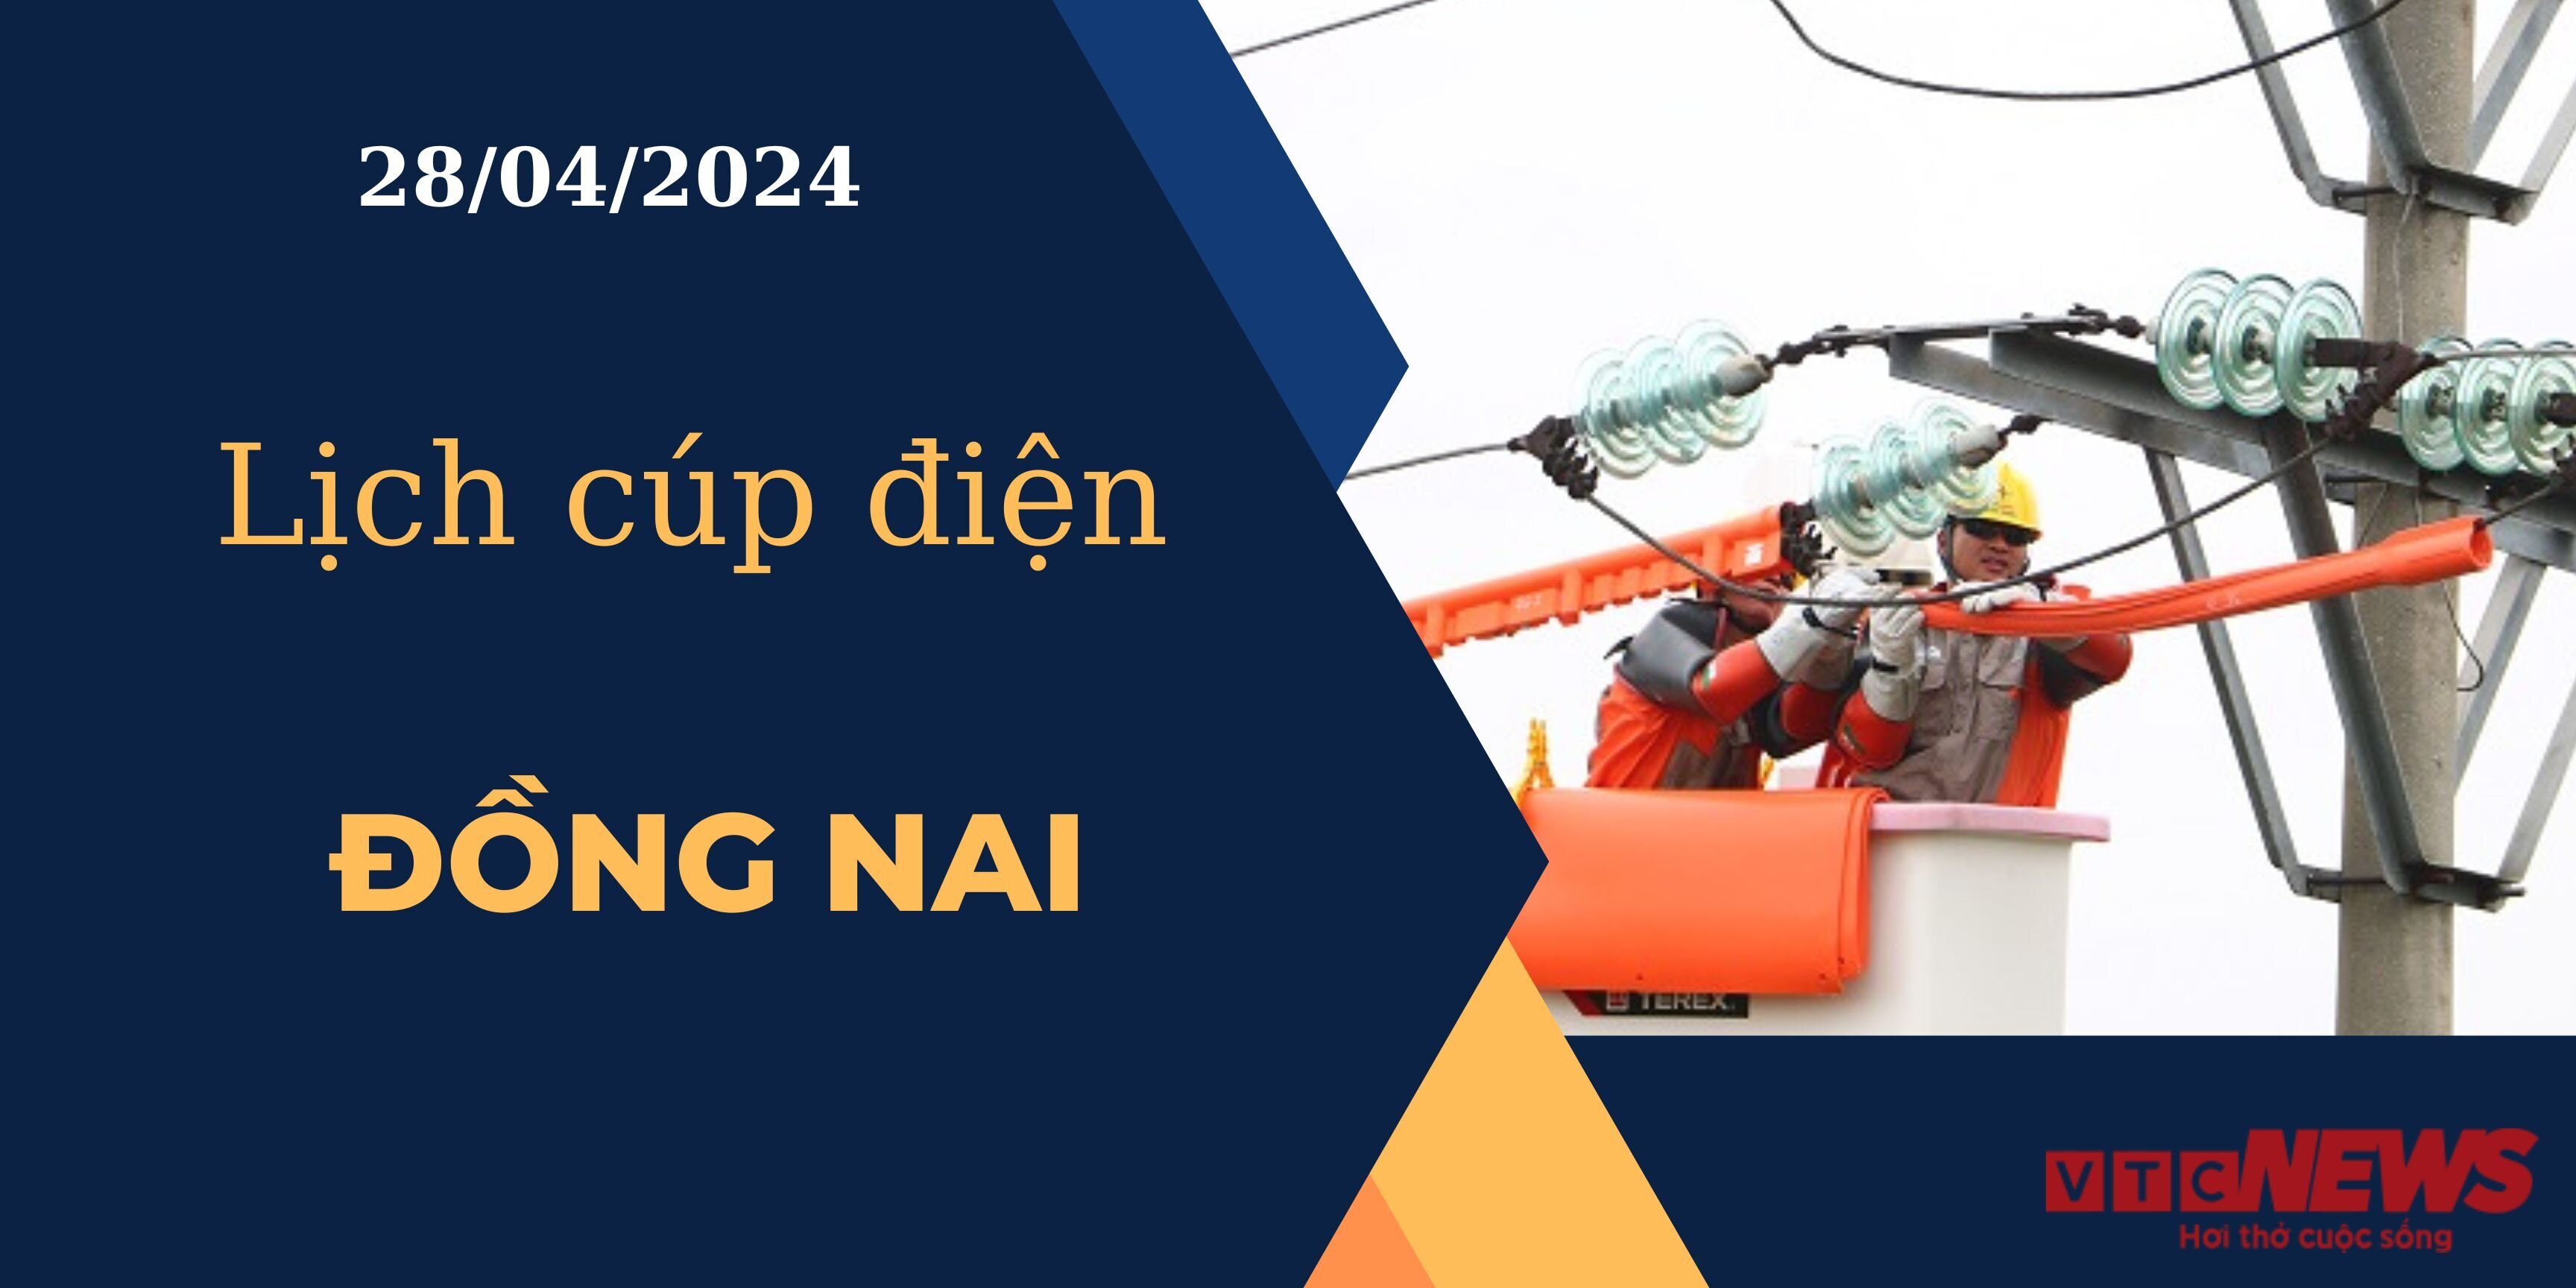 Lịch cúp điện hôm nay ngày 28/04/2024 tại Đồng Nai